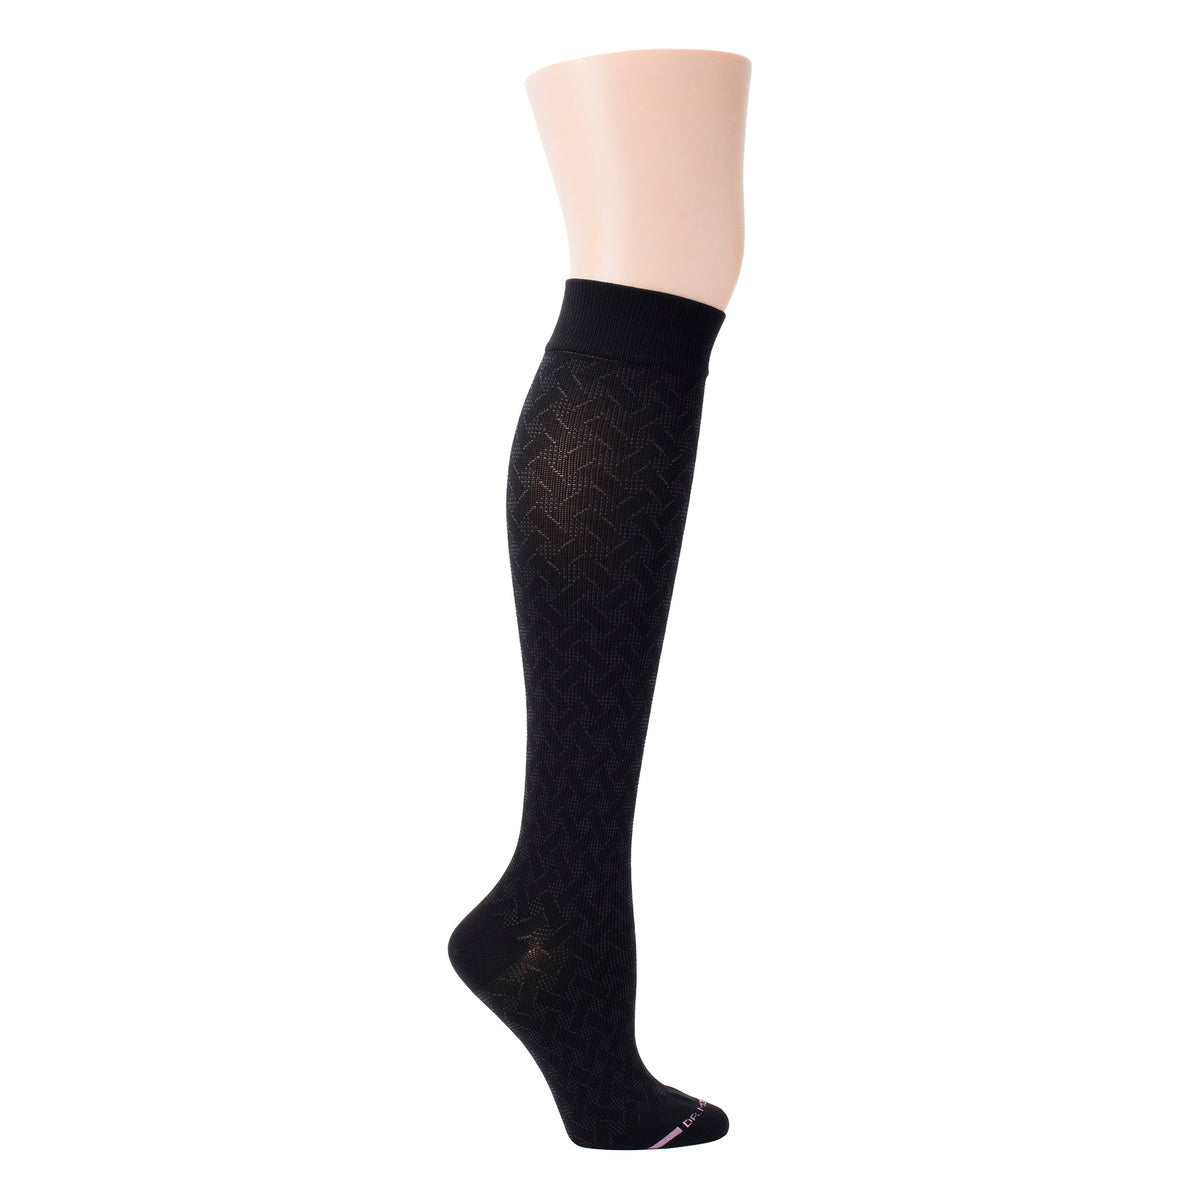 Basket Weave | Knee-High Compression Socks For Women | Dr. Motion